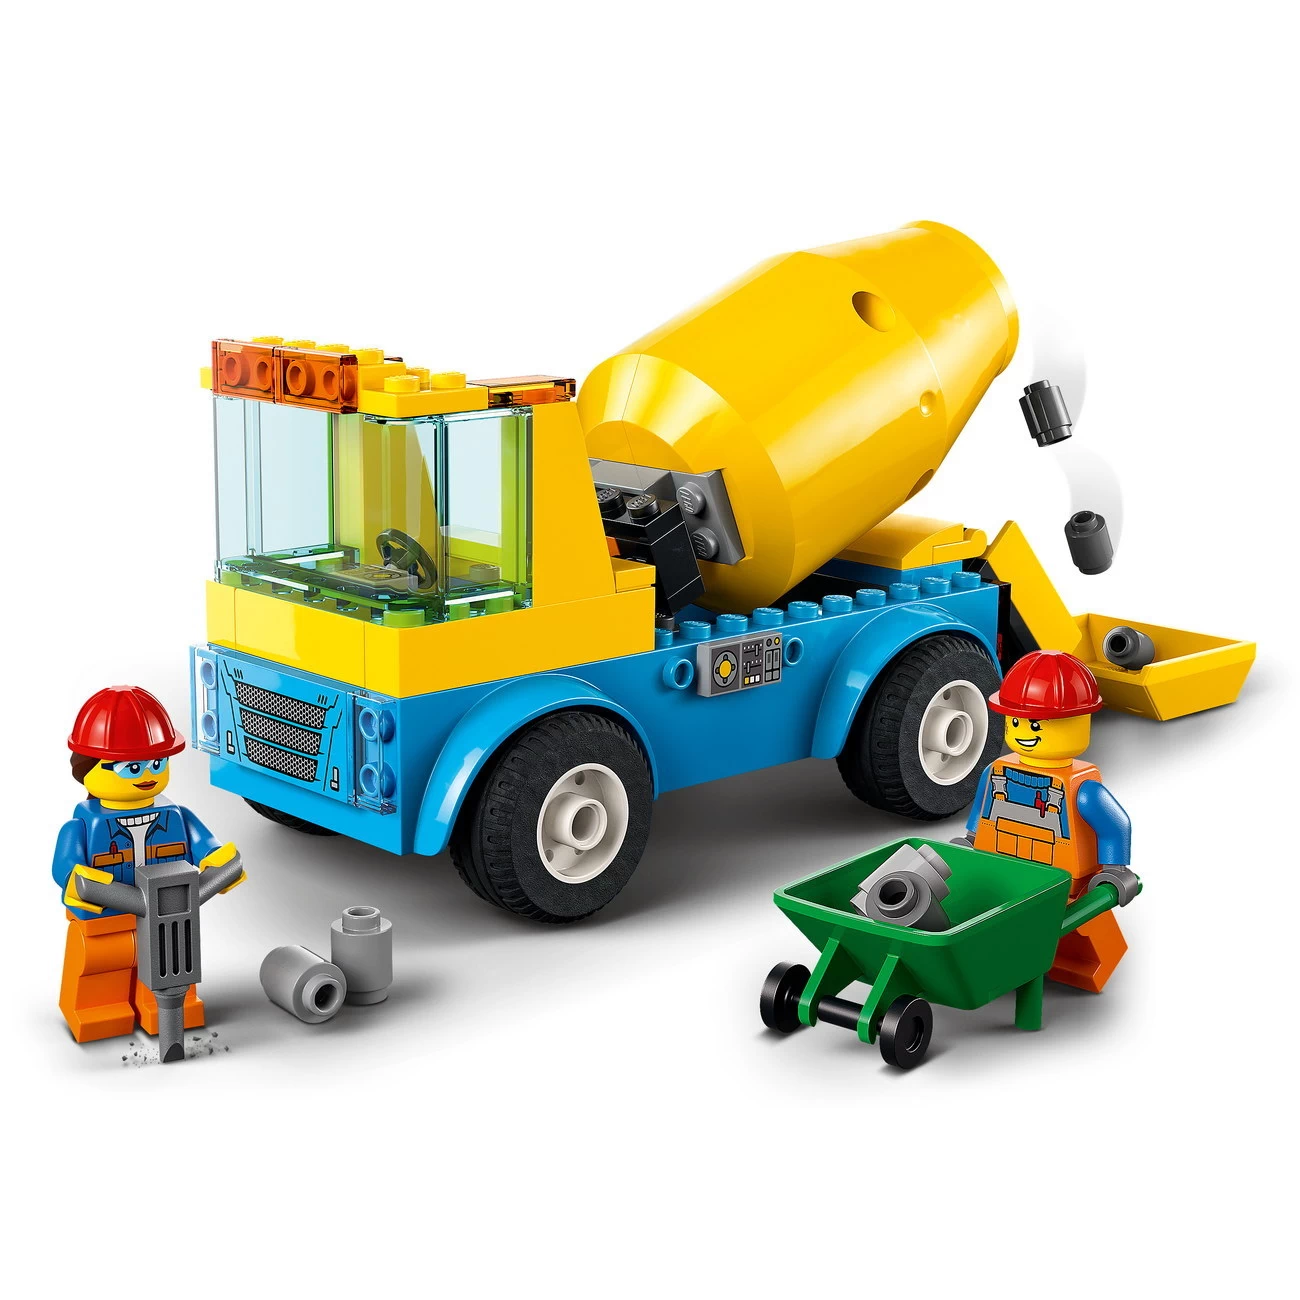 LEGO City 60325 - Betonmischer